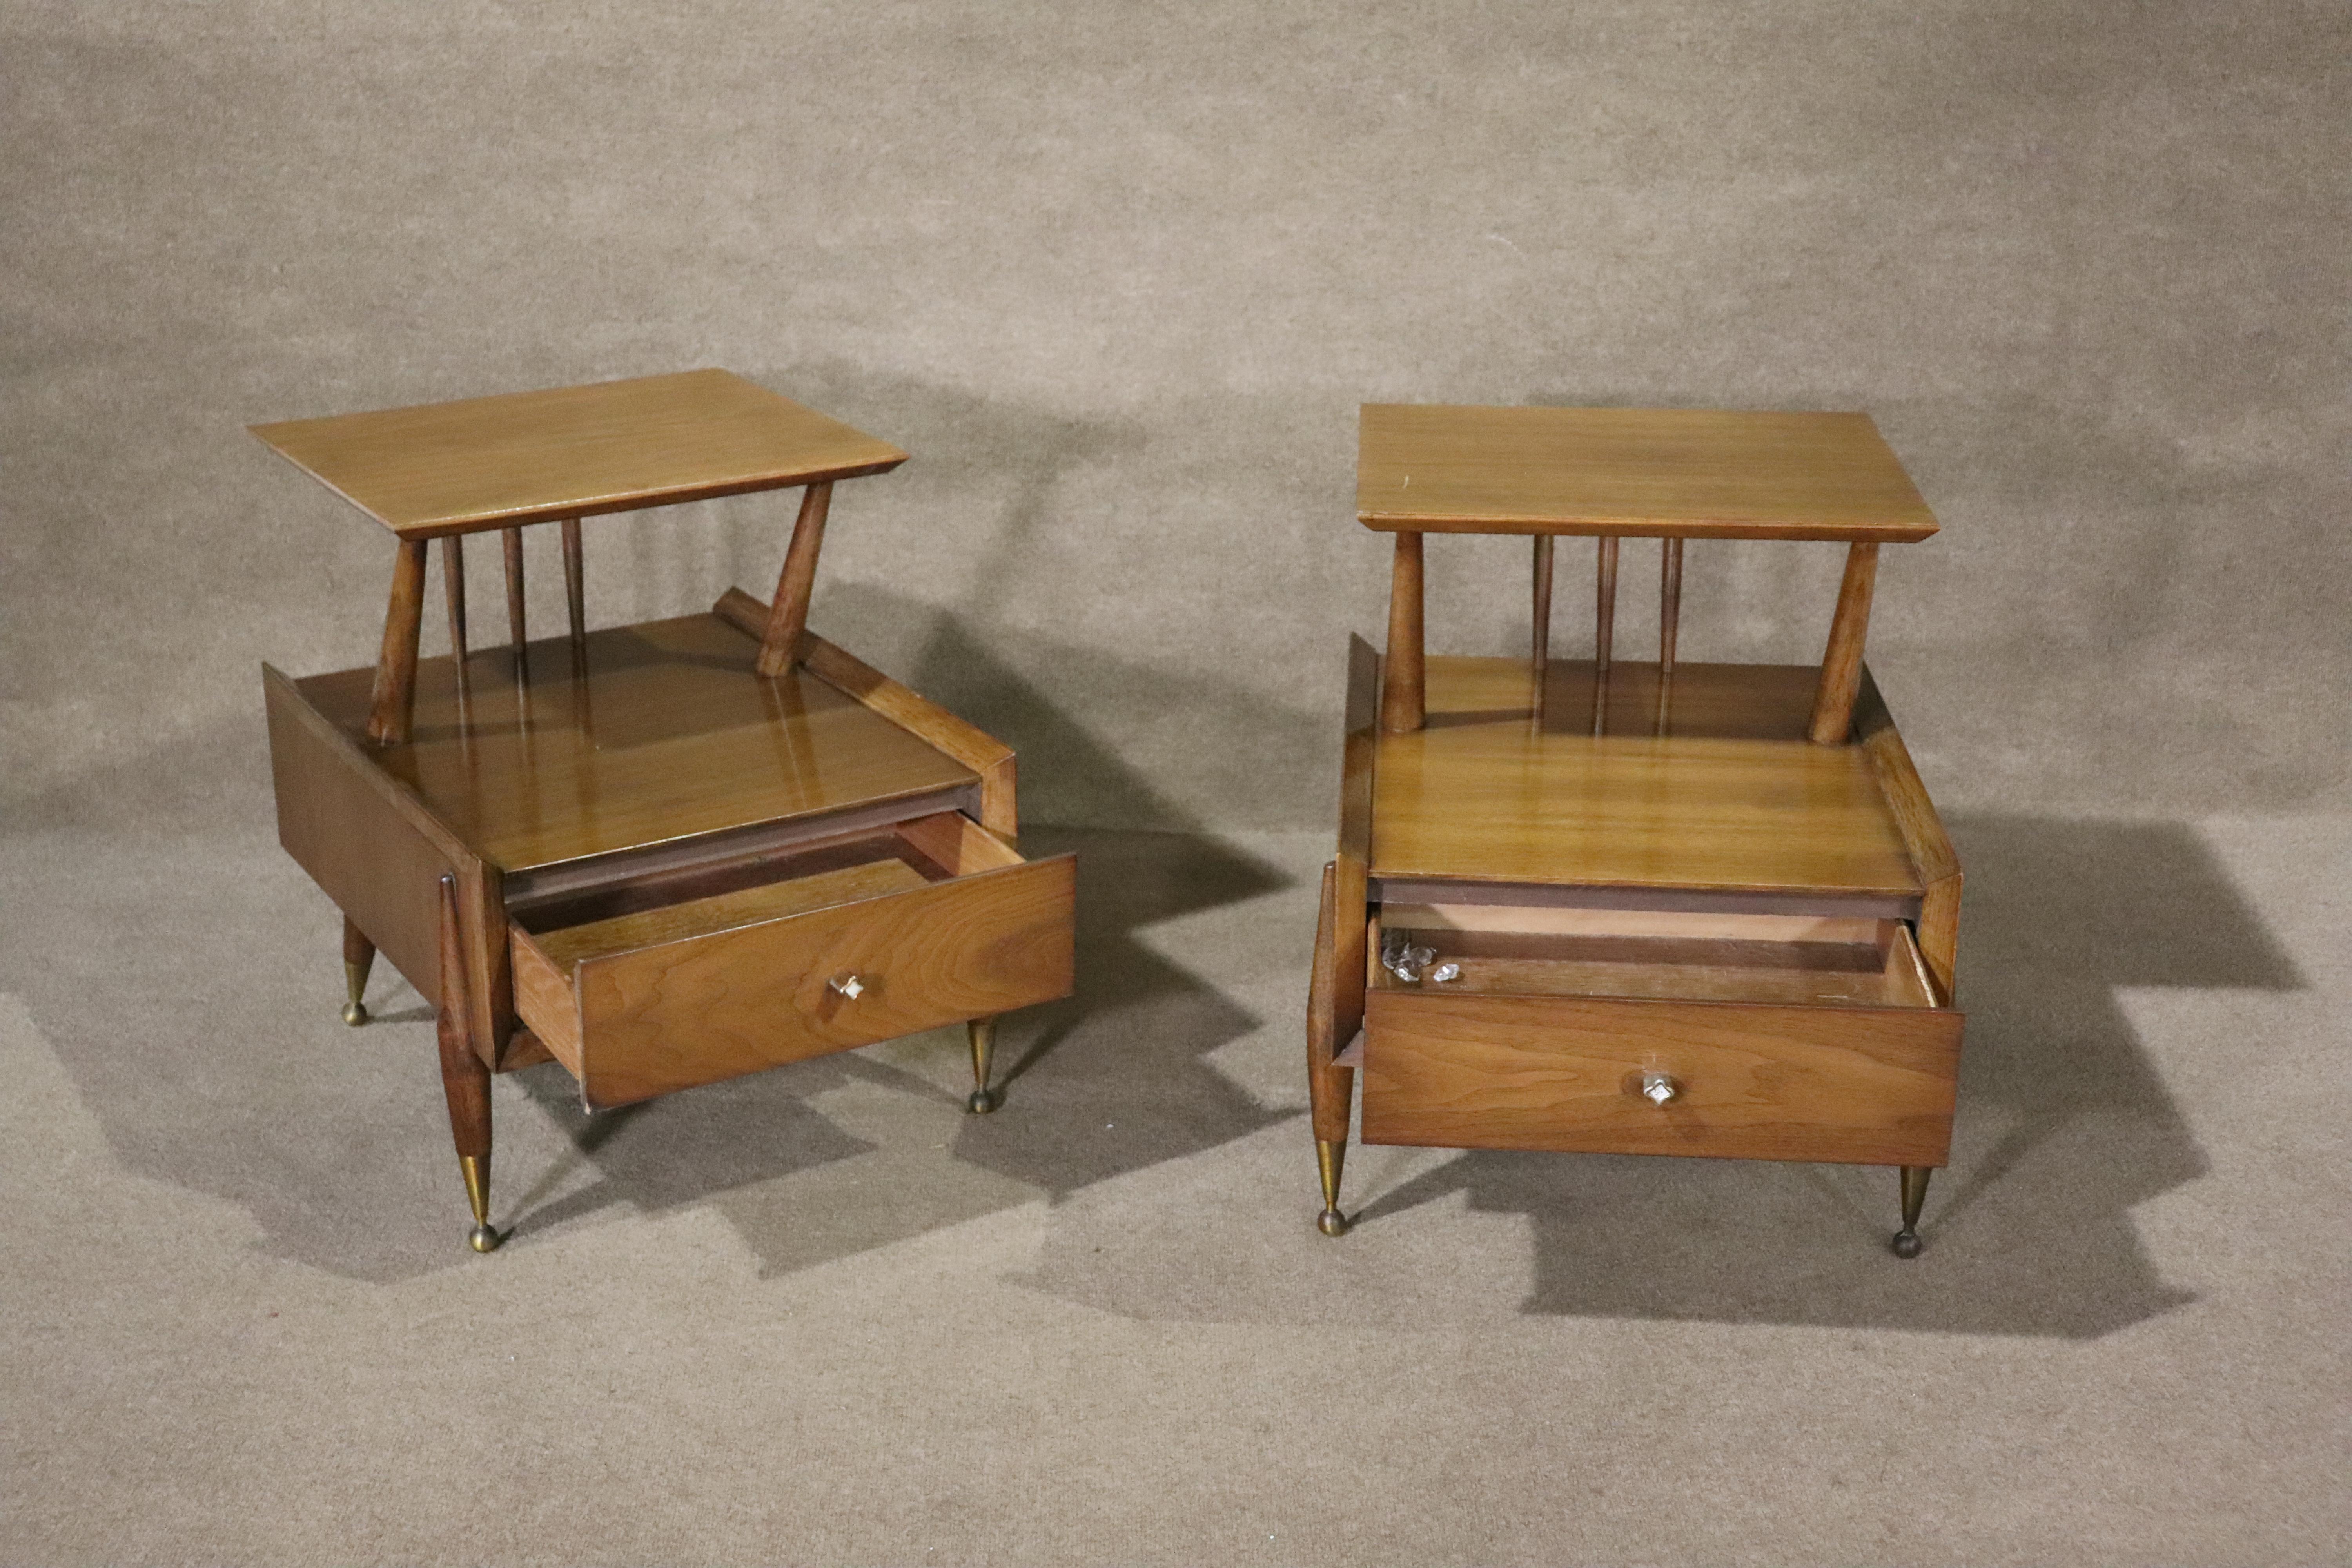 Paire de tables d'appoint à deux niveaux de style moderne du milieu du siècle dernier par Kent Coffey. Grain de noyer chaud et quincaillerie en laiton.
Veuillez confirmer le lieu NY ou NJ